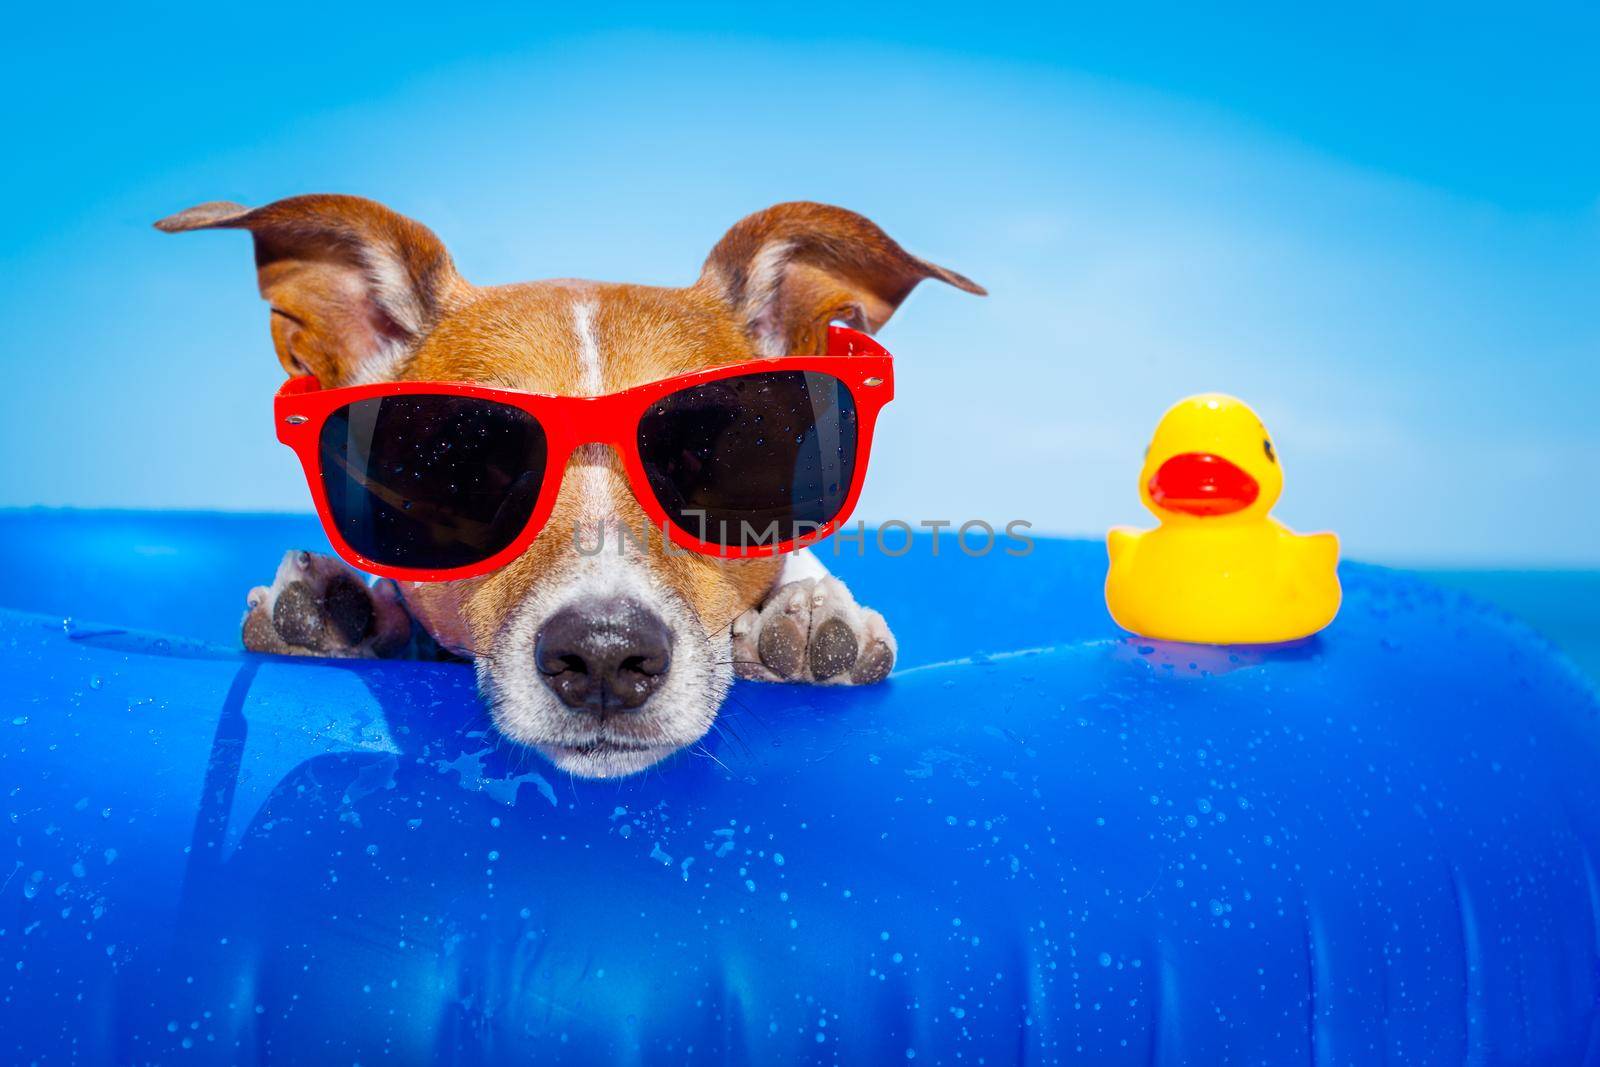 summer holiday dog by Brosch